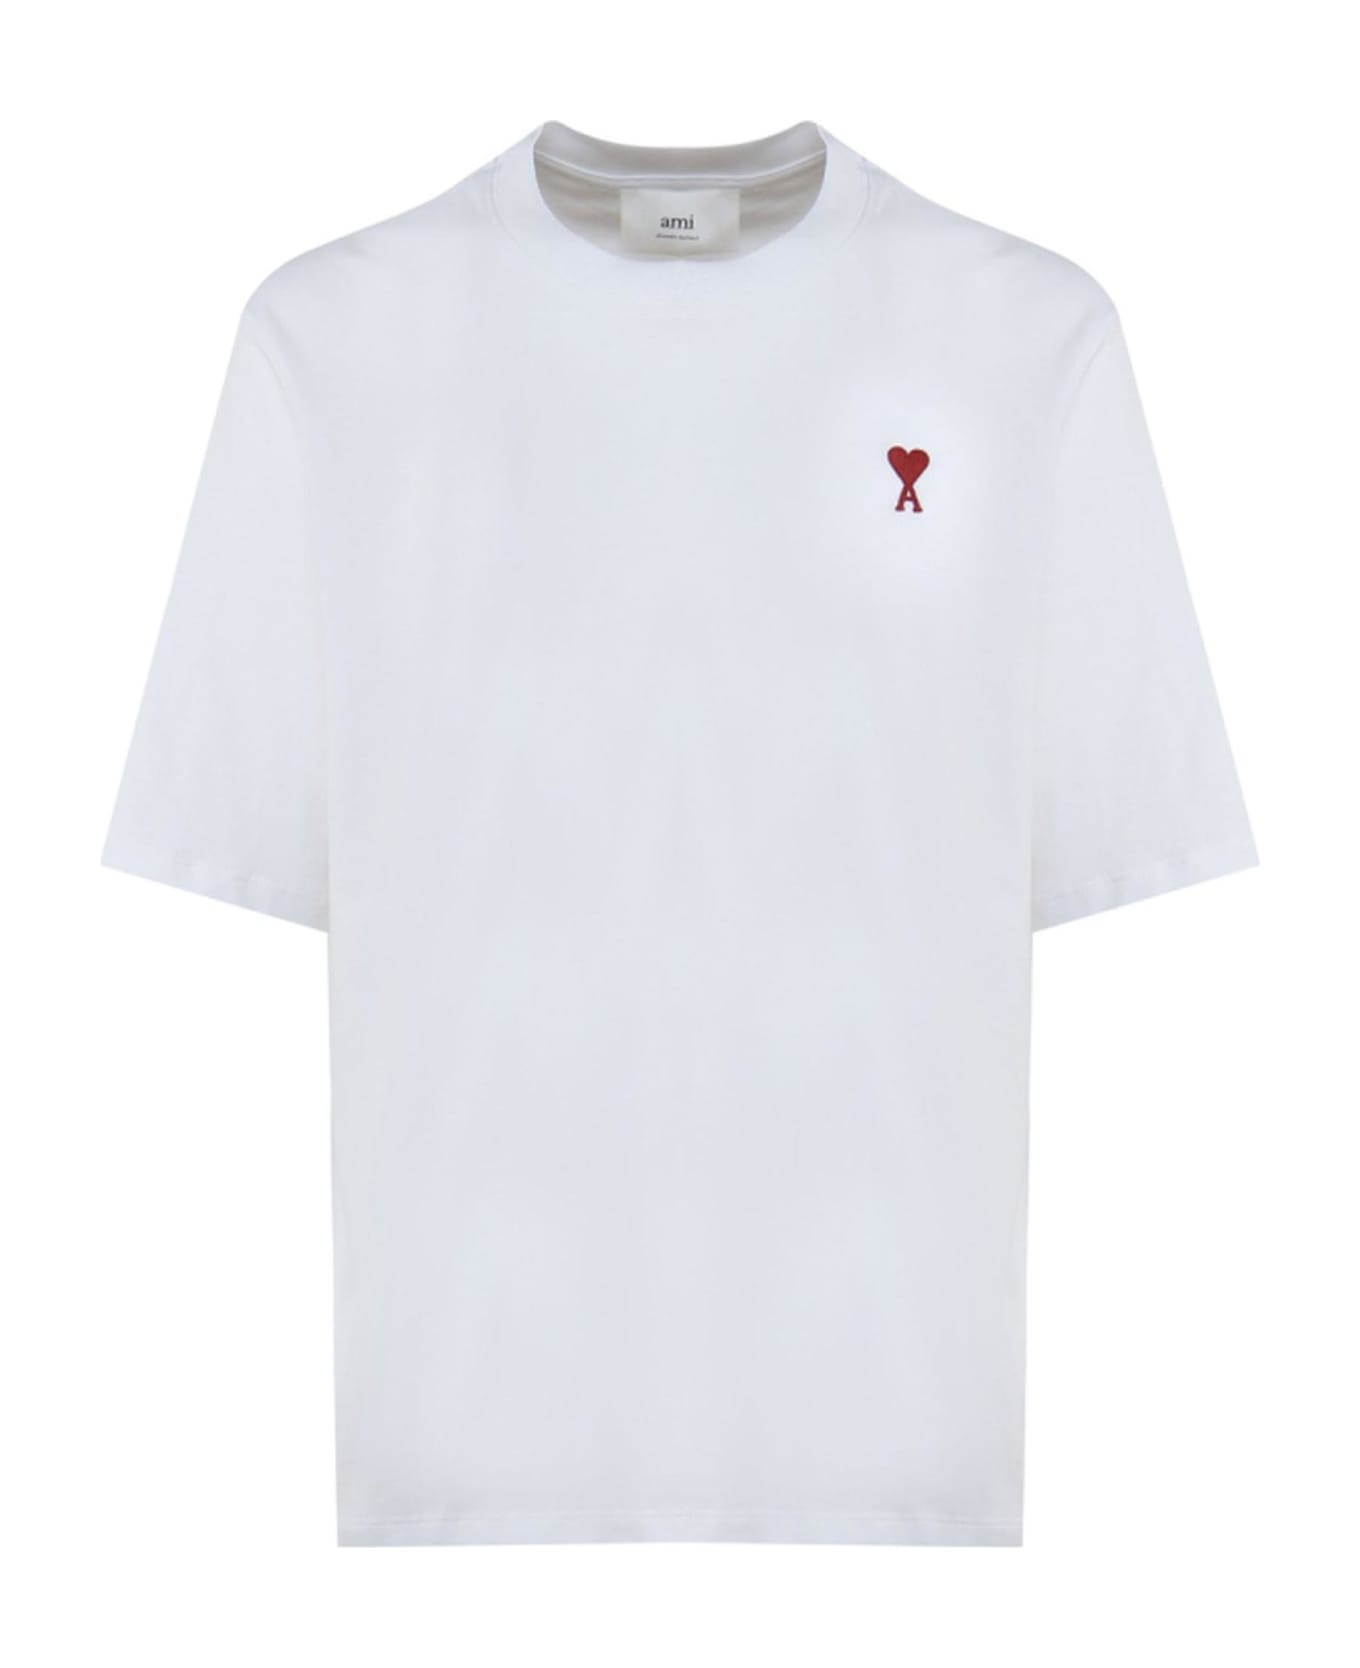 Ami Alexandre Mattiussi Ami T-shirts And Polos White - White